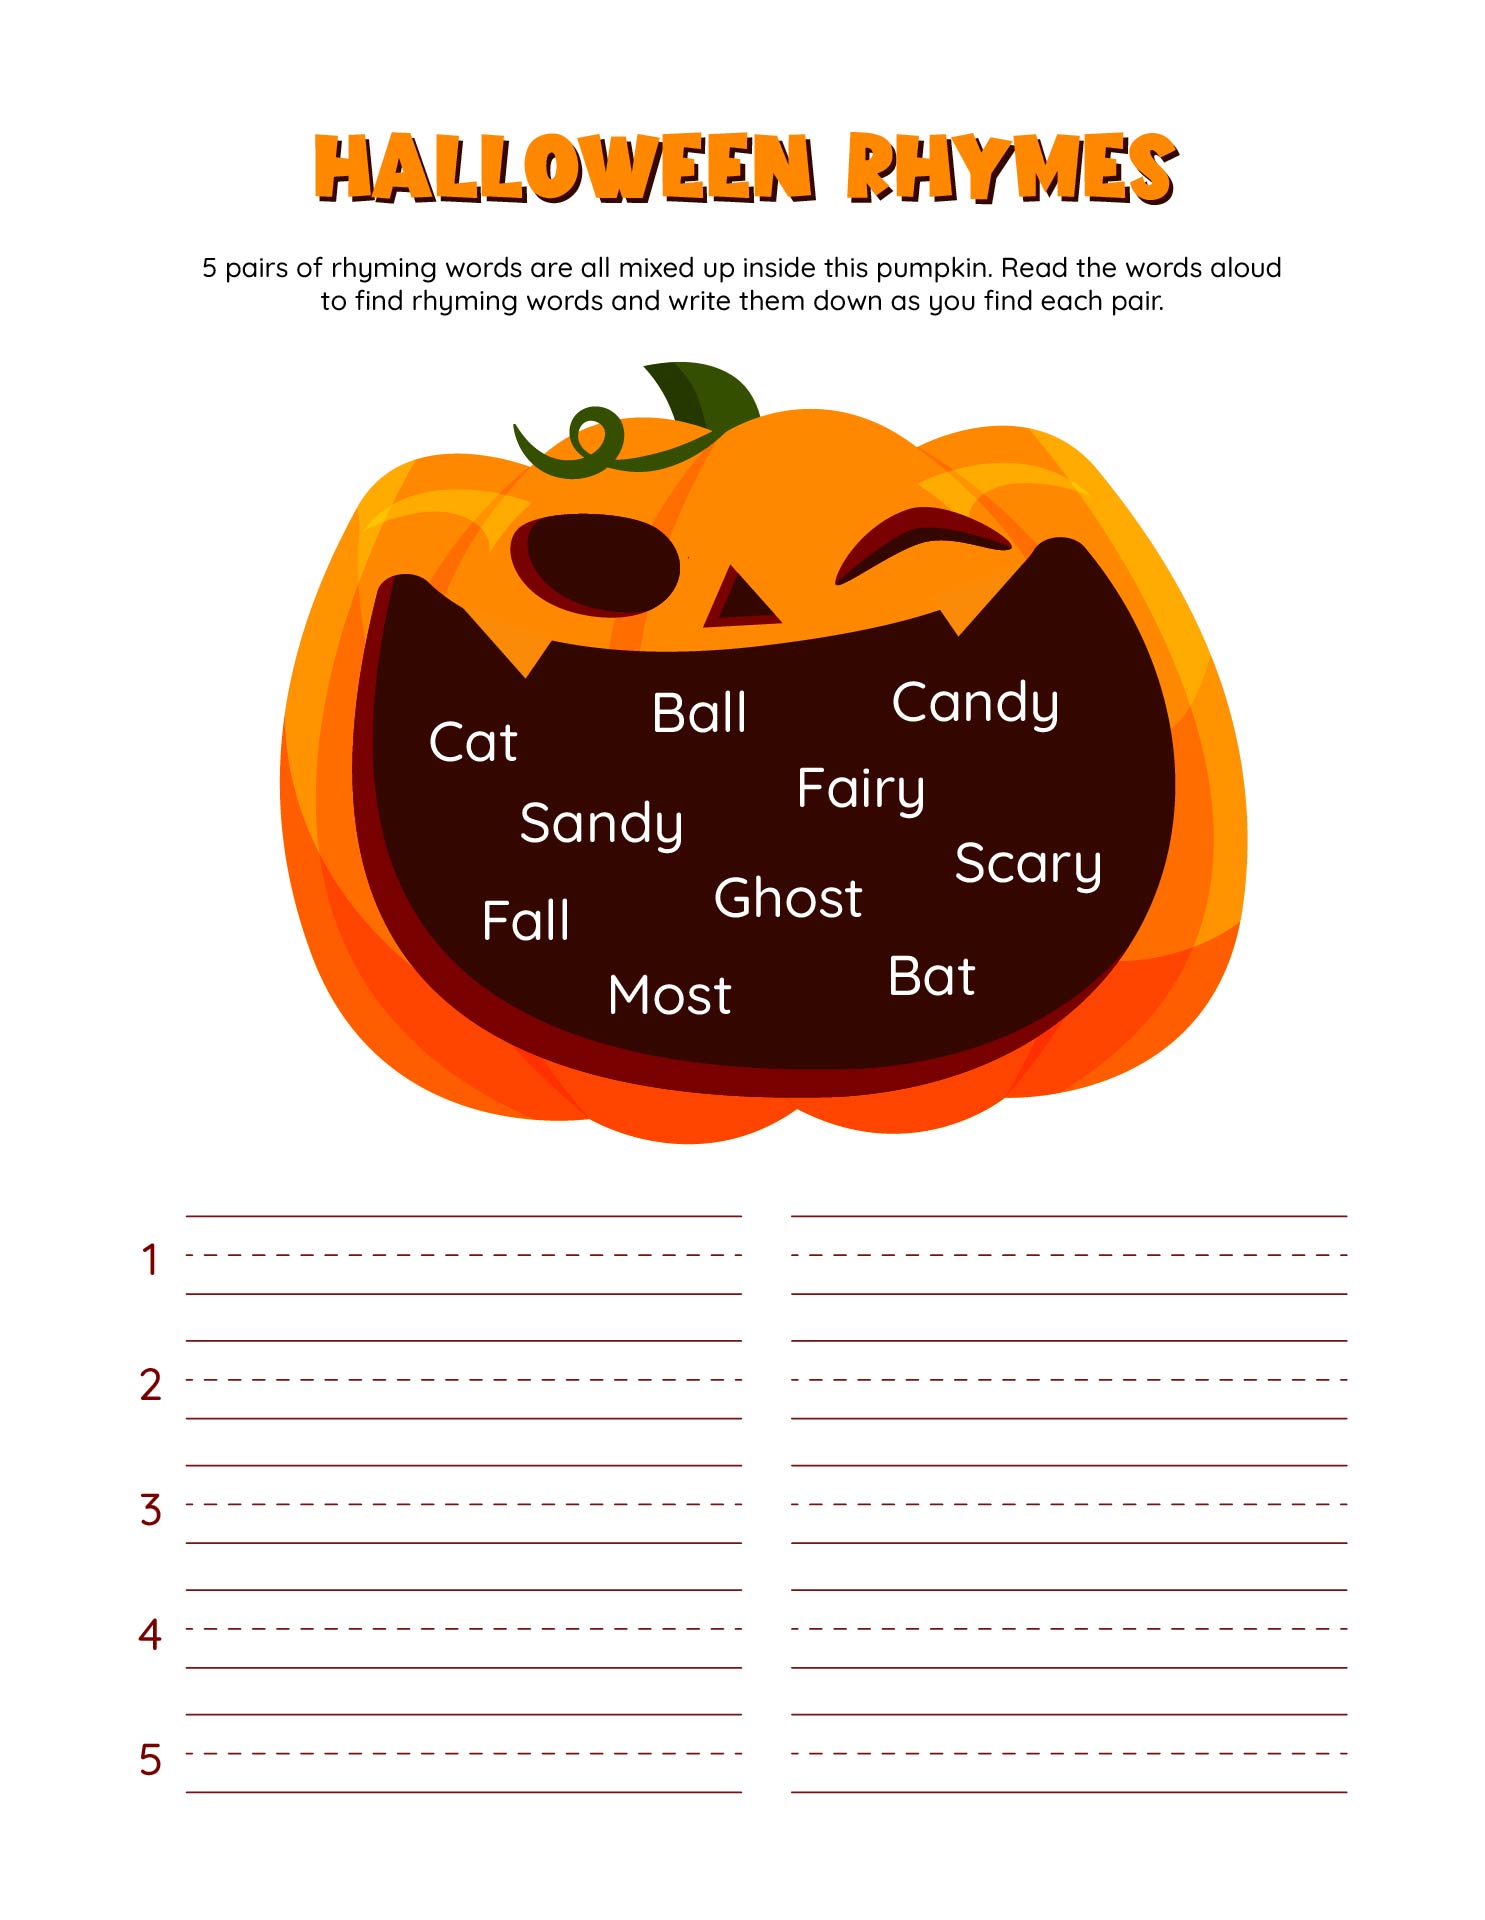 Halloween Rhymes Printable Worksheet